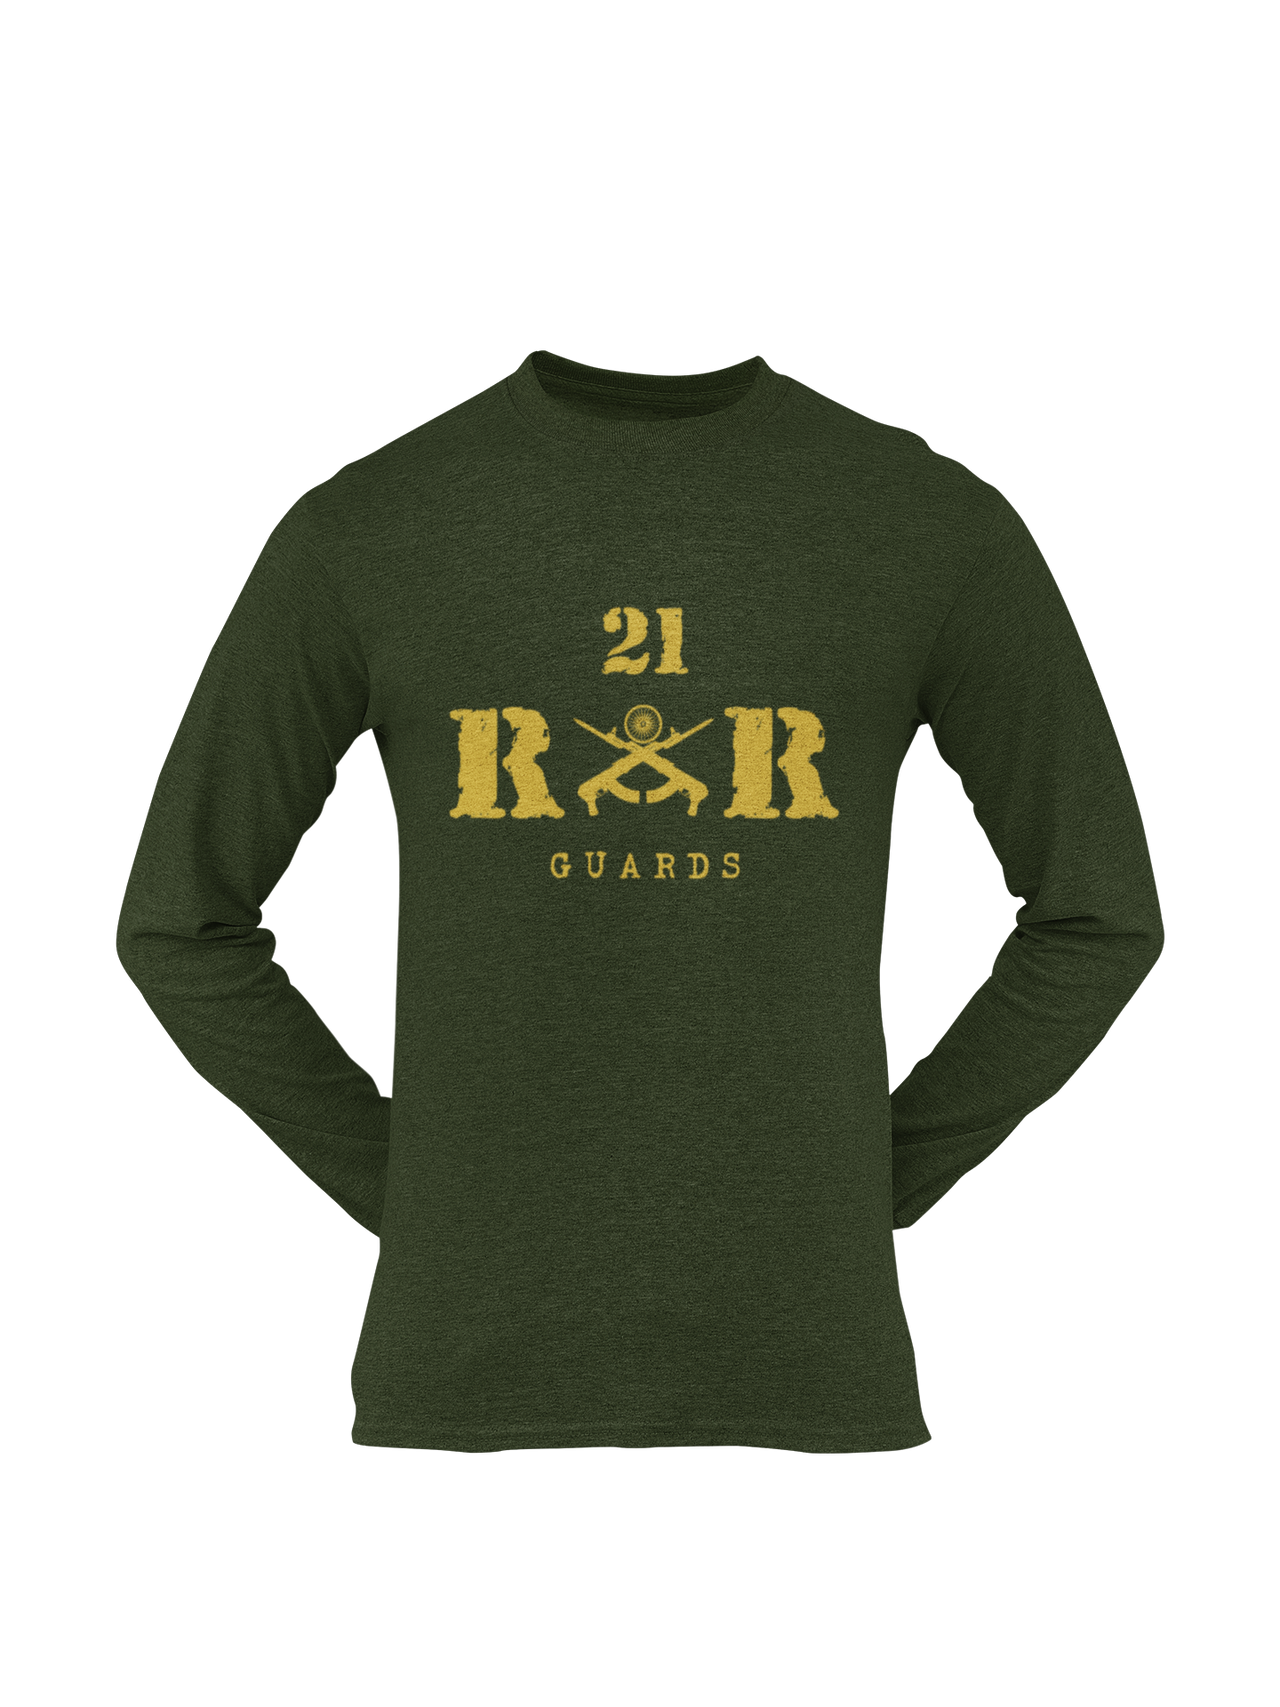 Rashtriya Rifles T-shirt - 21 RR Guards (Men)